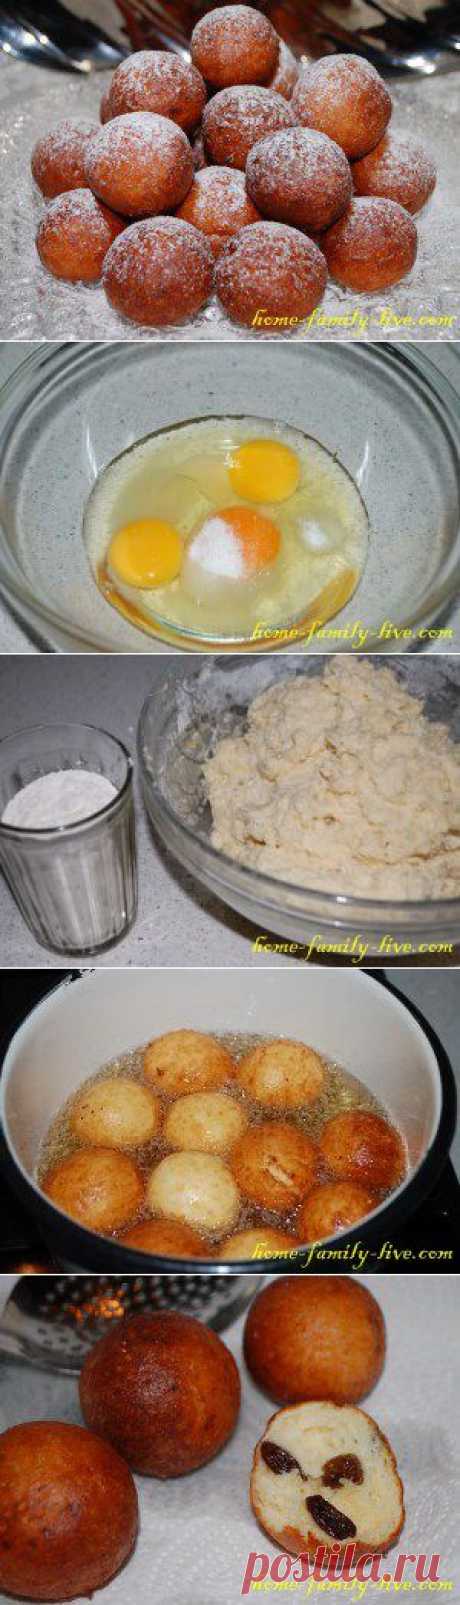 Творожные колобки - пошаговый рецепт с фото - пончики